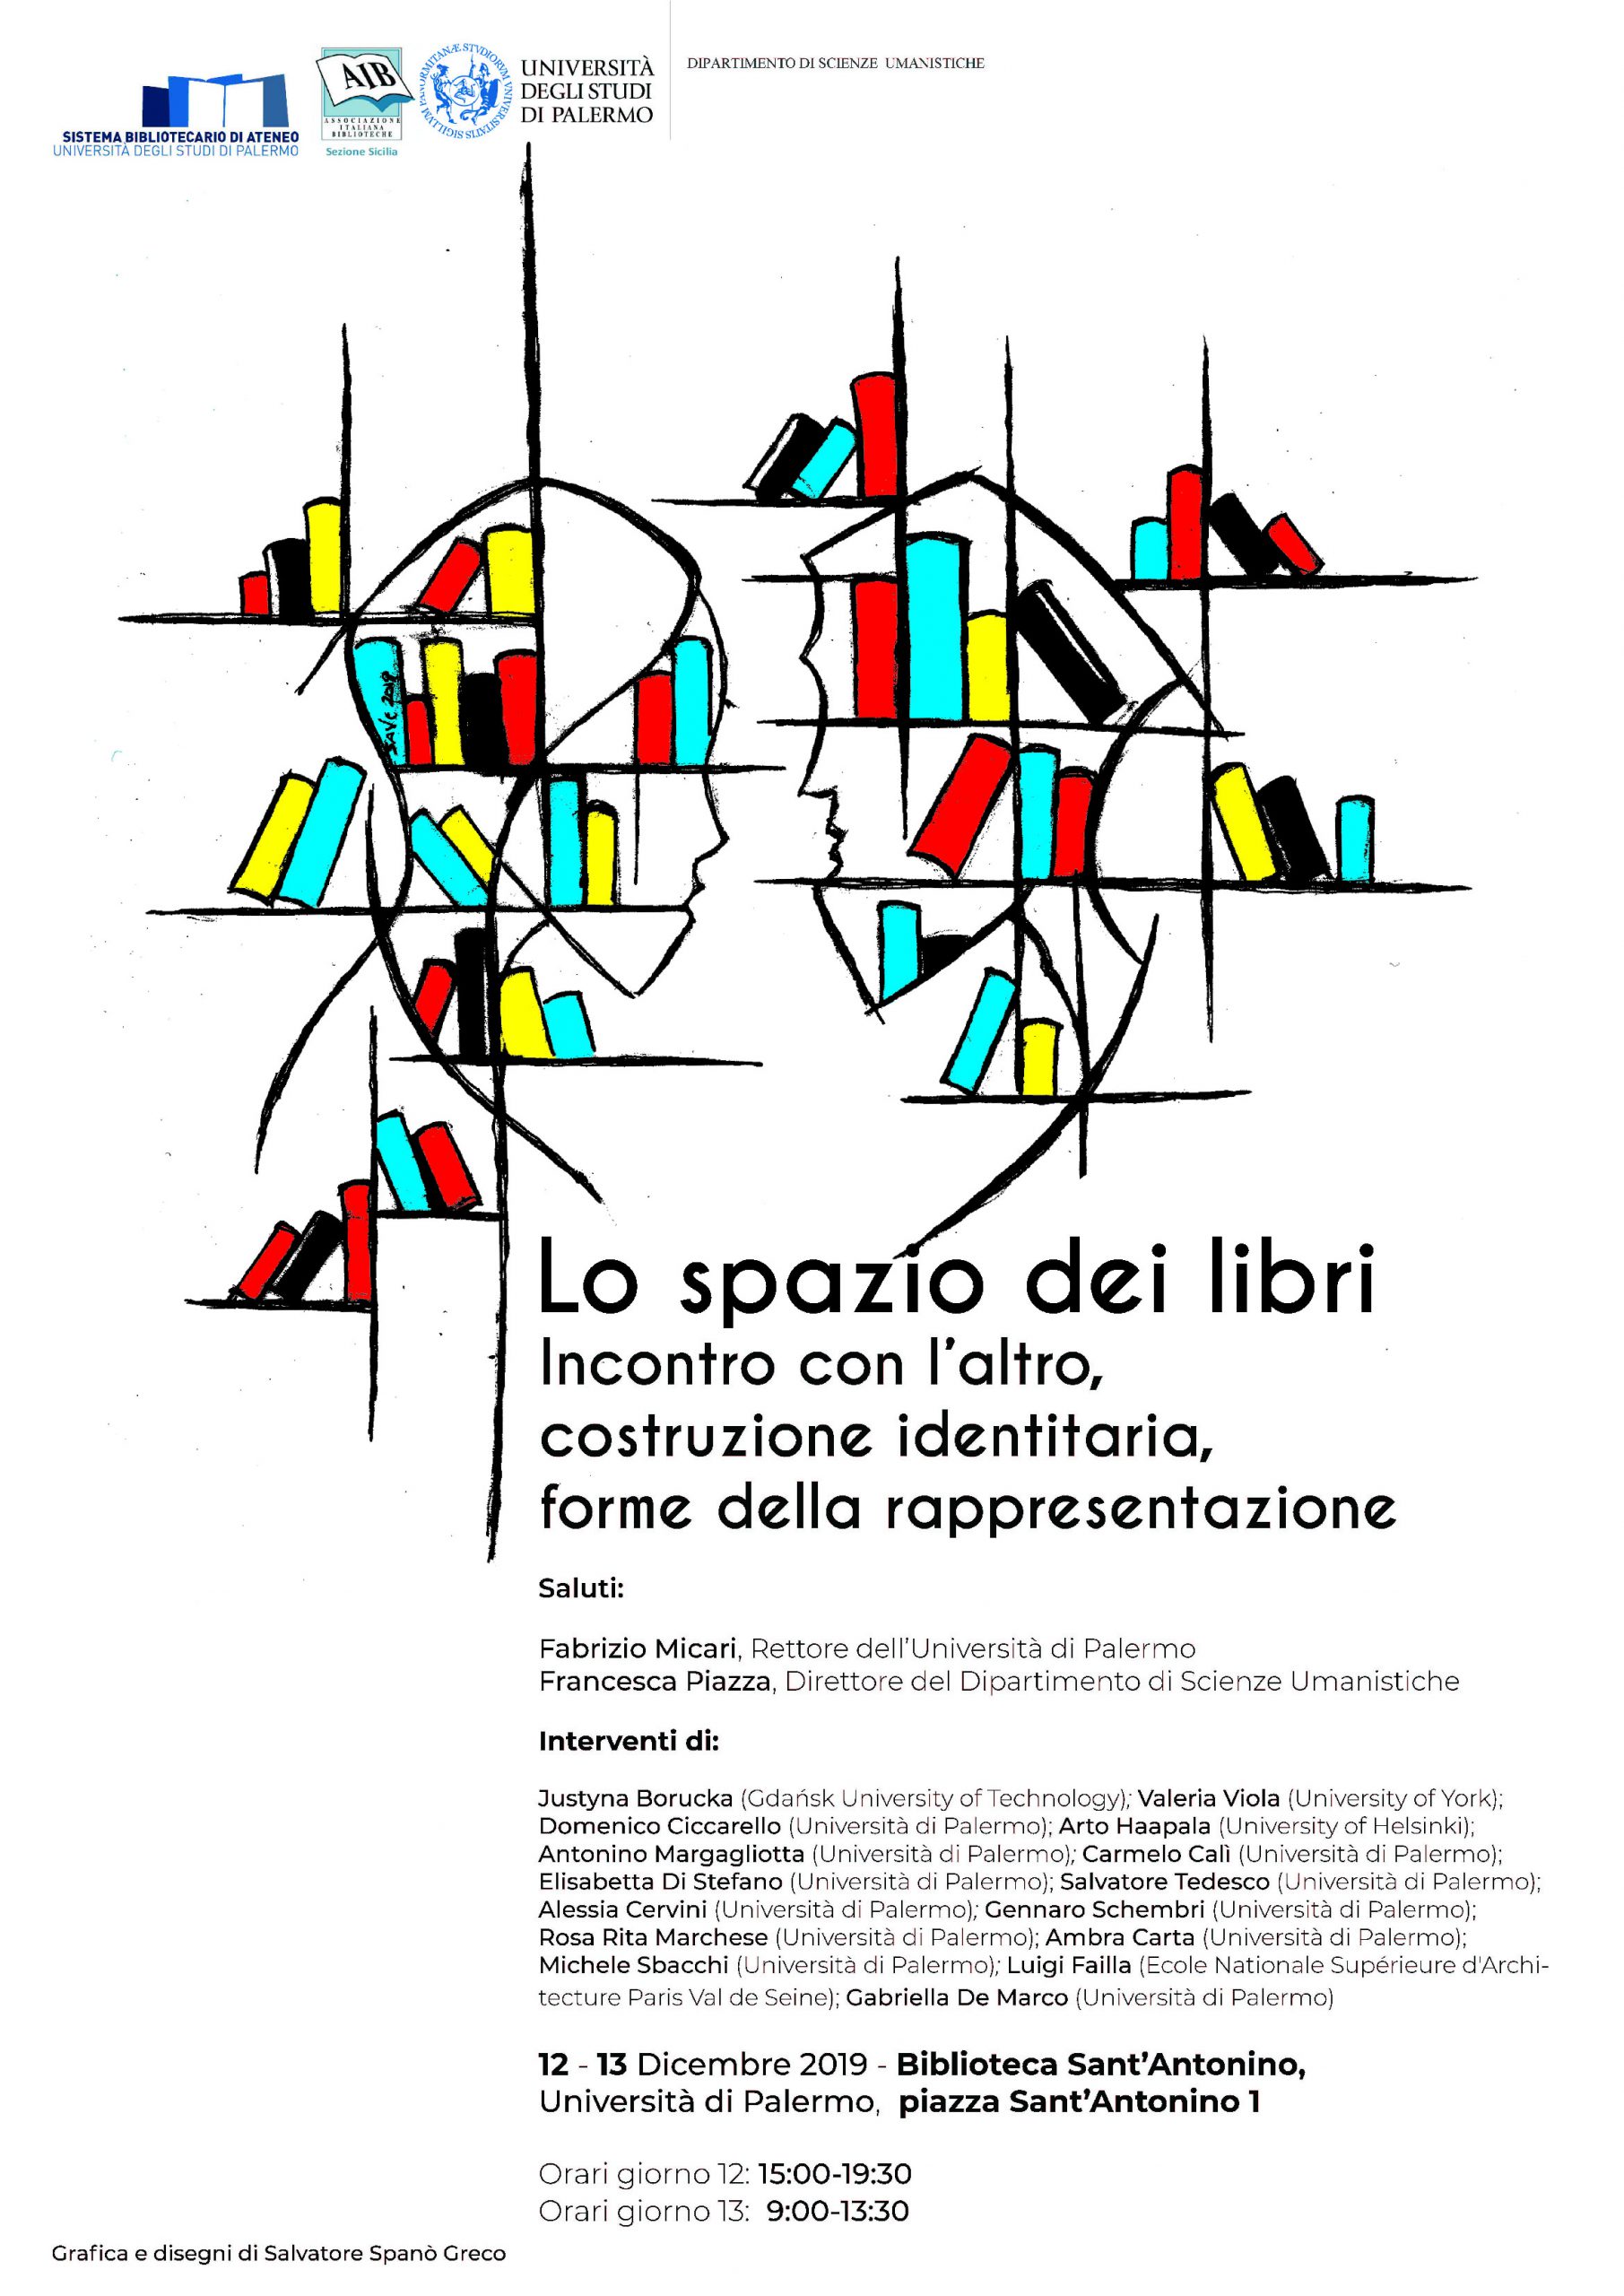 Programma del Convegno "Lo spazio dei libri" Palermo, 12-13 dicembre 2019